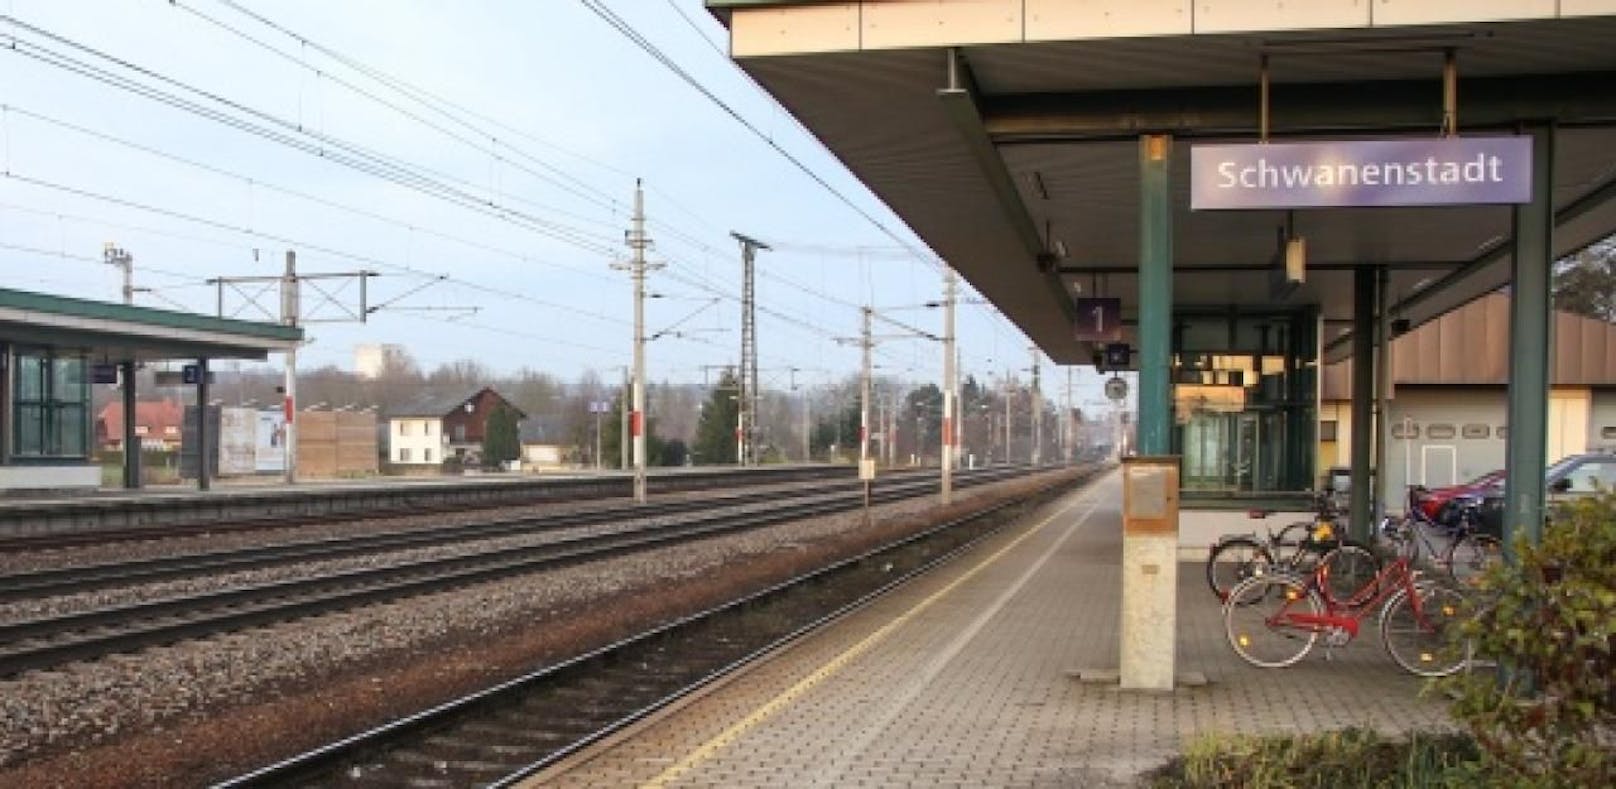 Der Bereich um den Bahnhof in Schwanenstadt wurde zum Teil mit Farbe verwüstet.